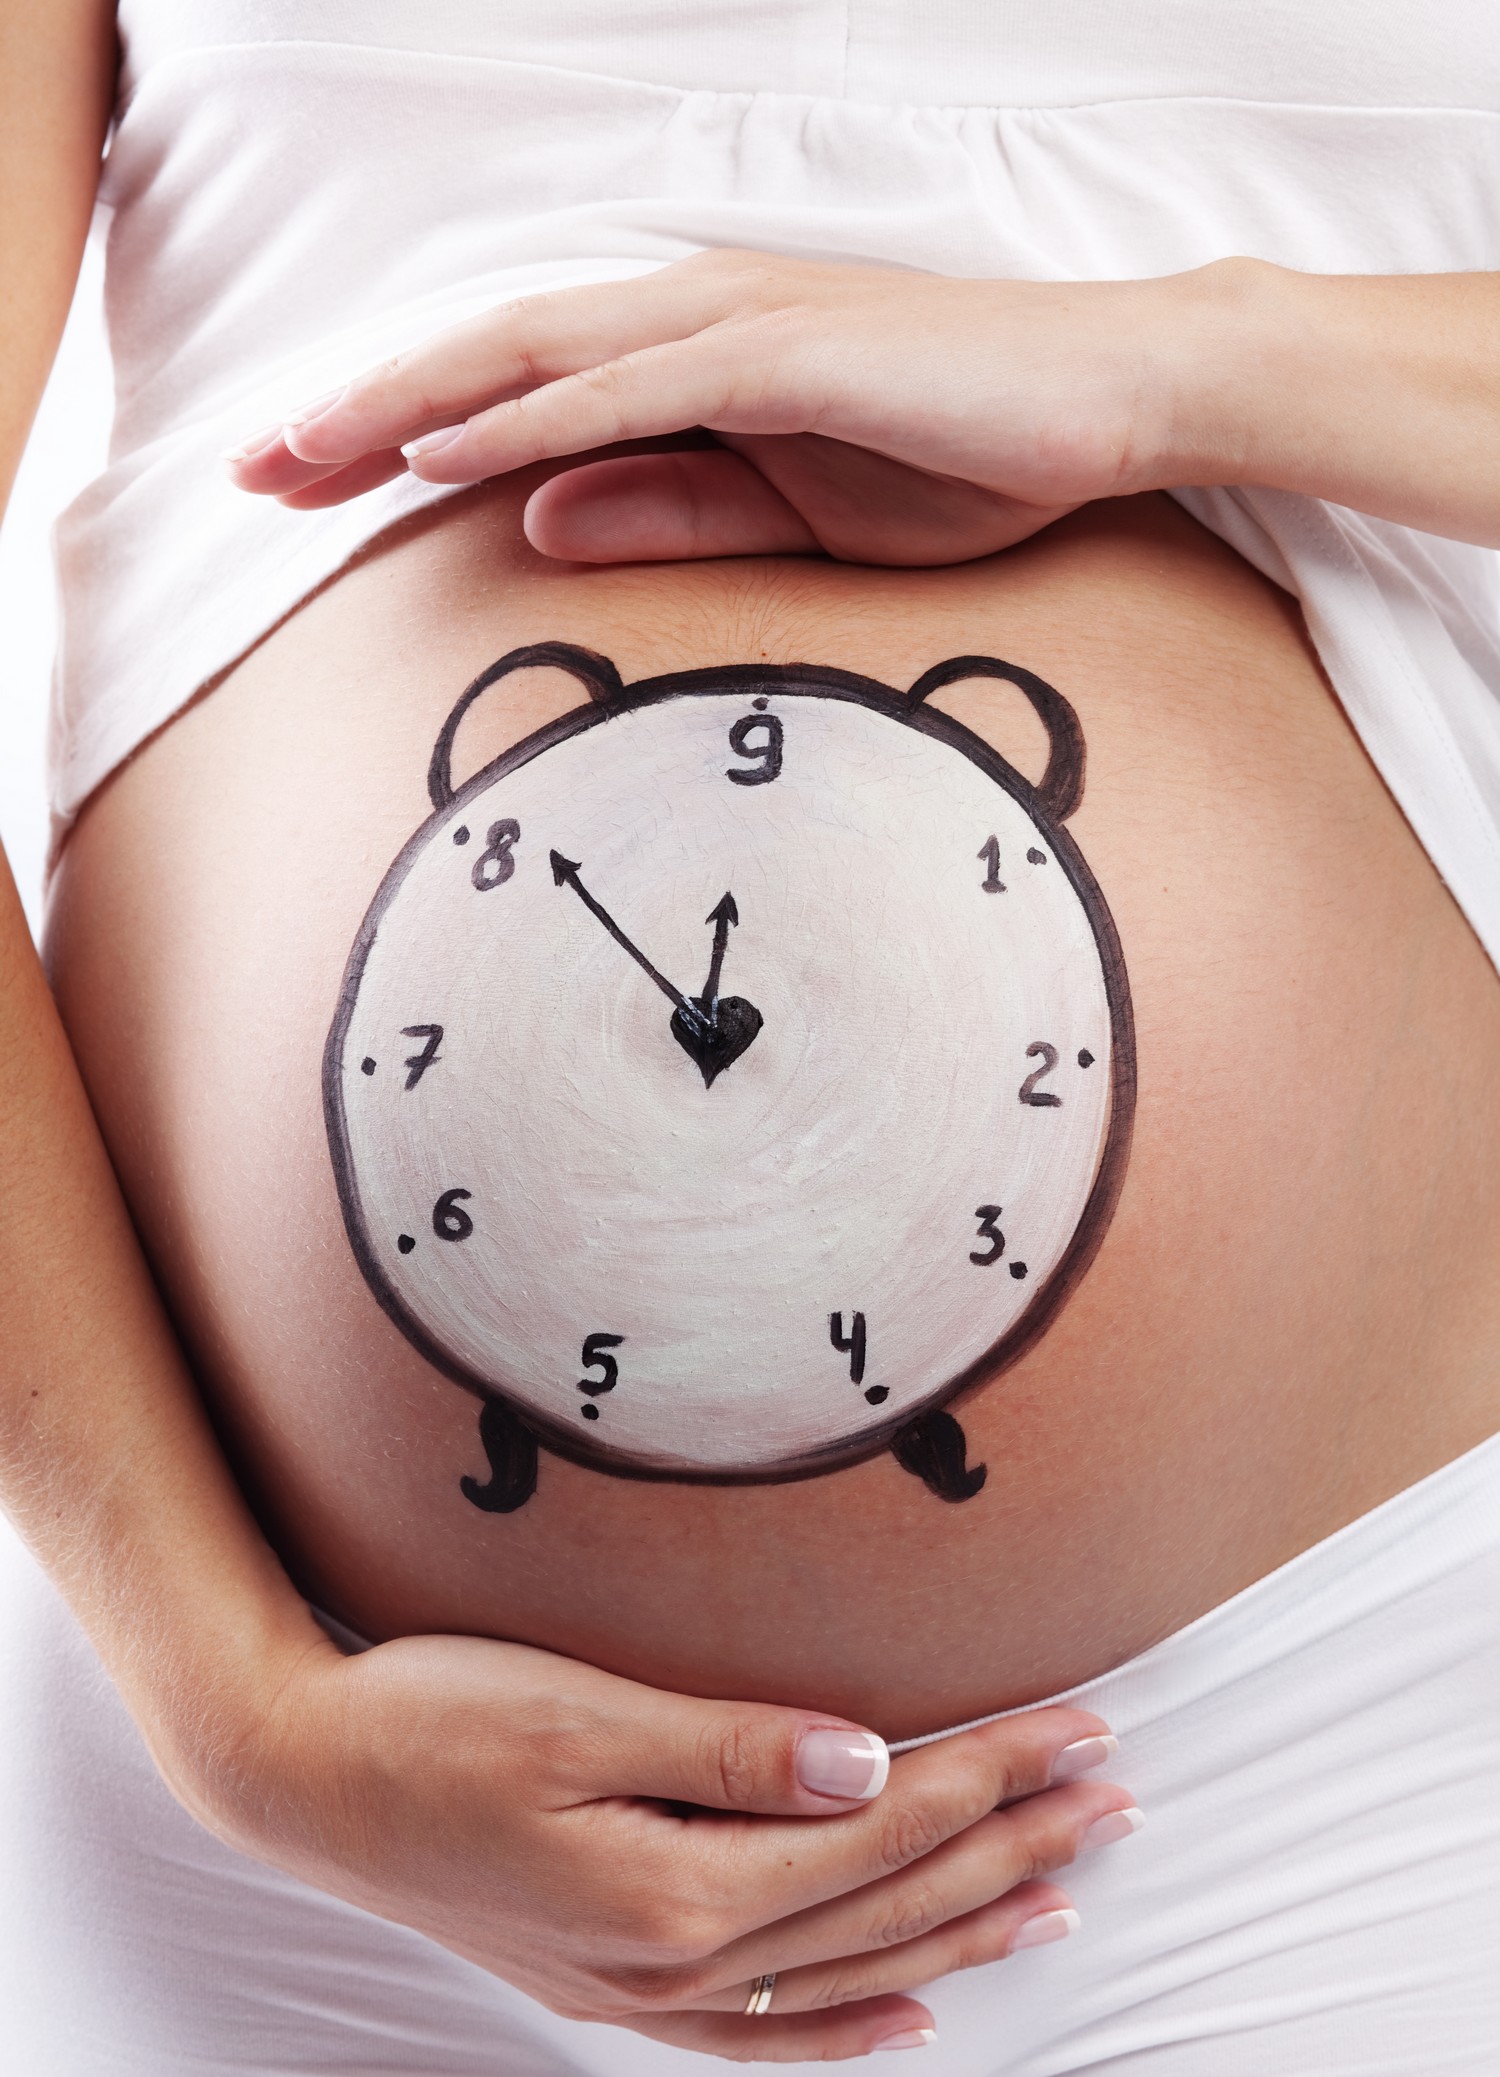 Роды 9 часов. Живот беременной и часы. Часы на животе. Беременные животики.